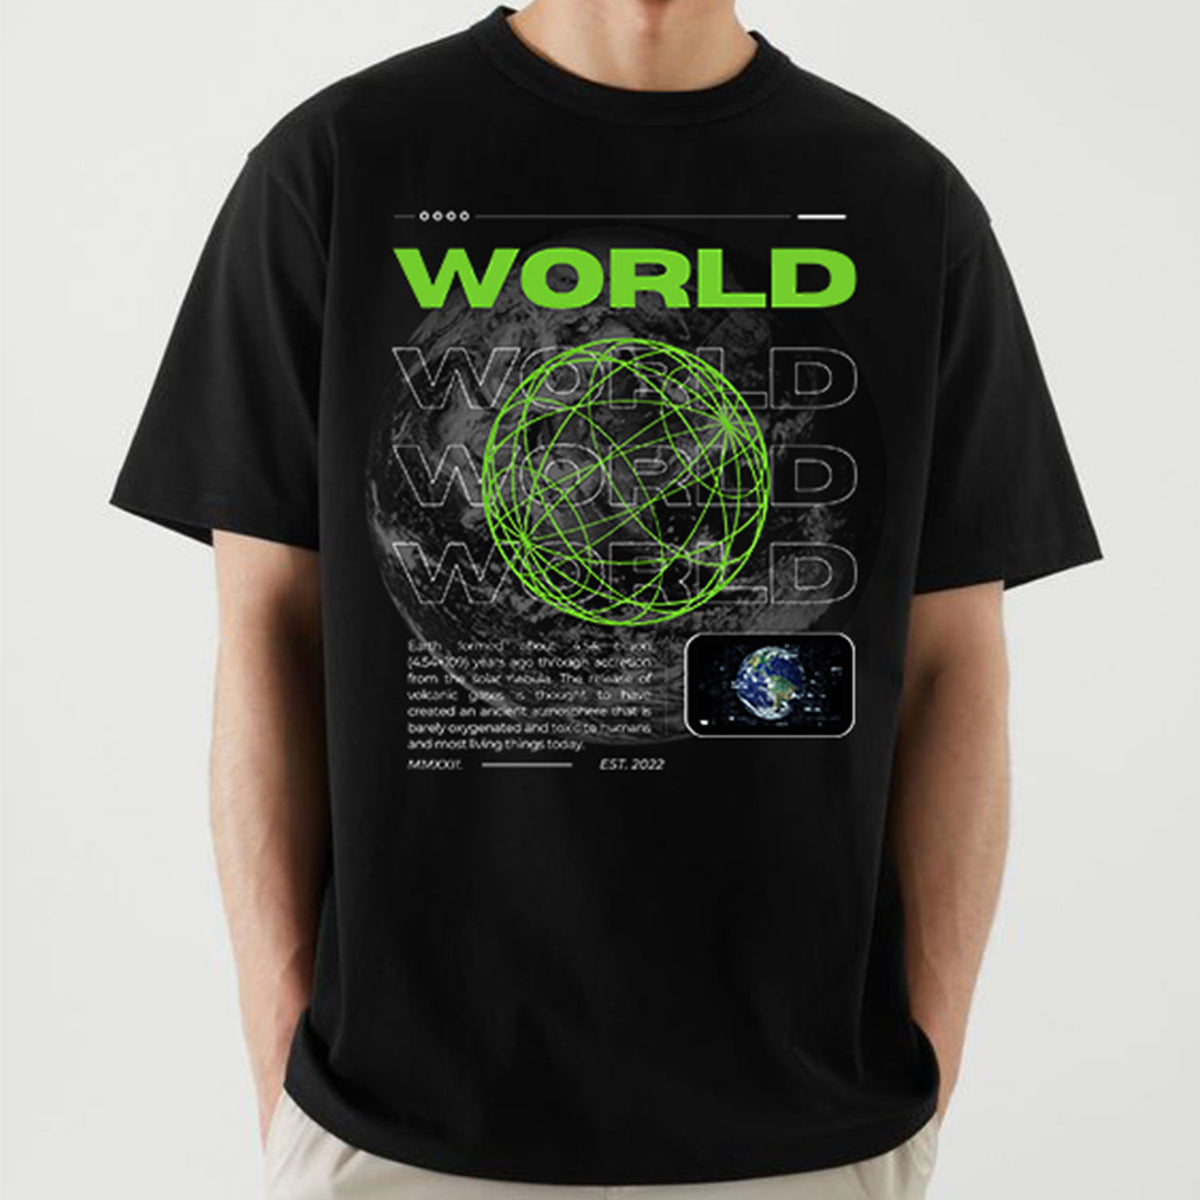 Men's Black World Printed Oversized T-shirt